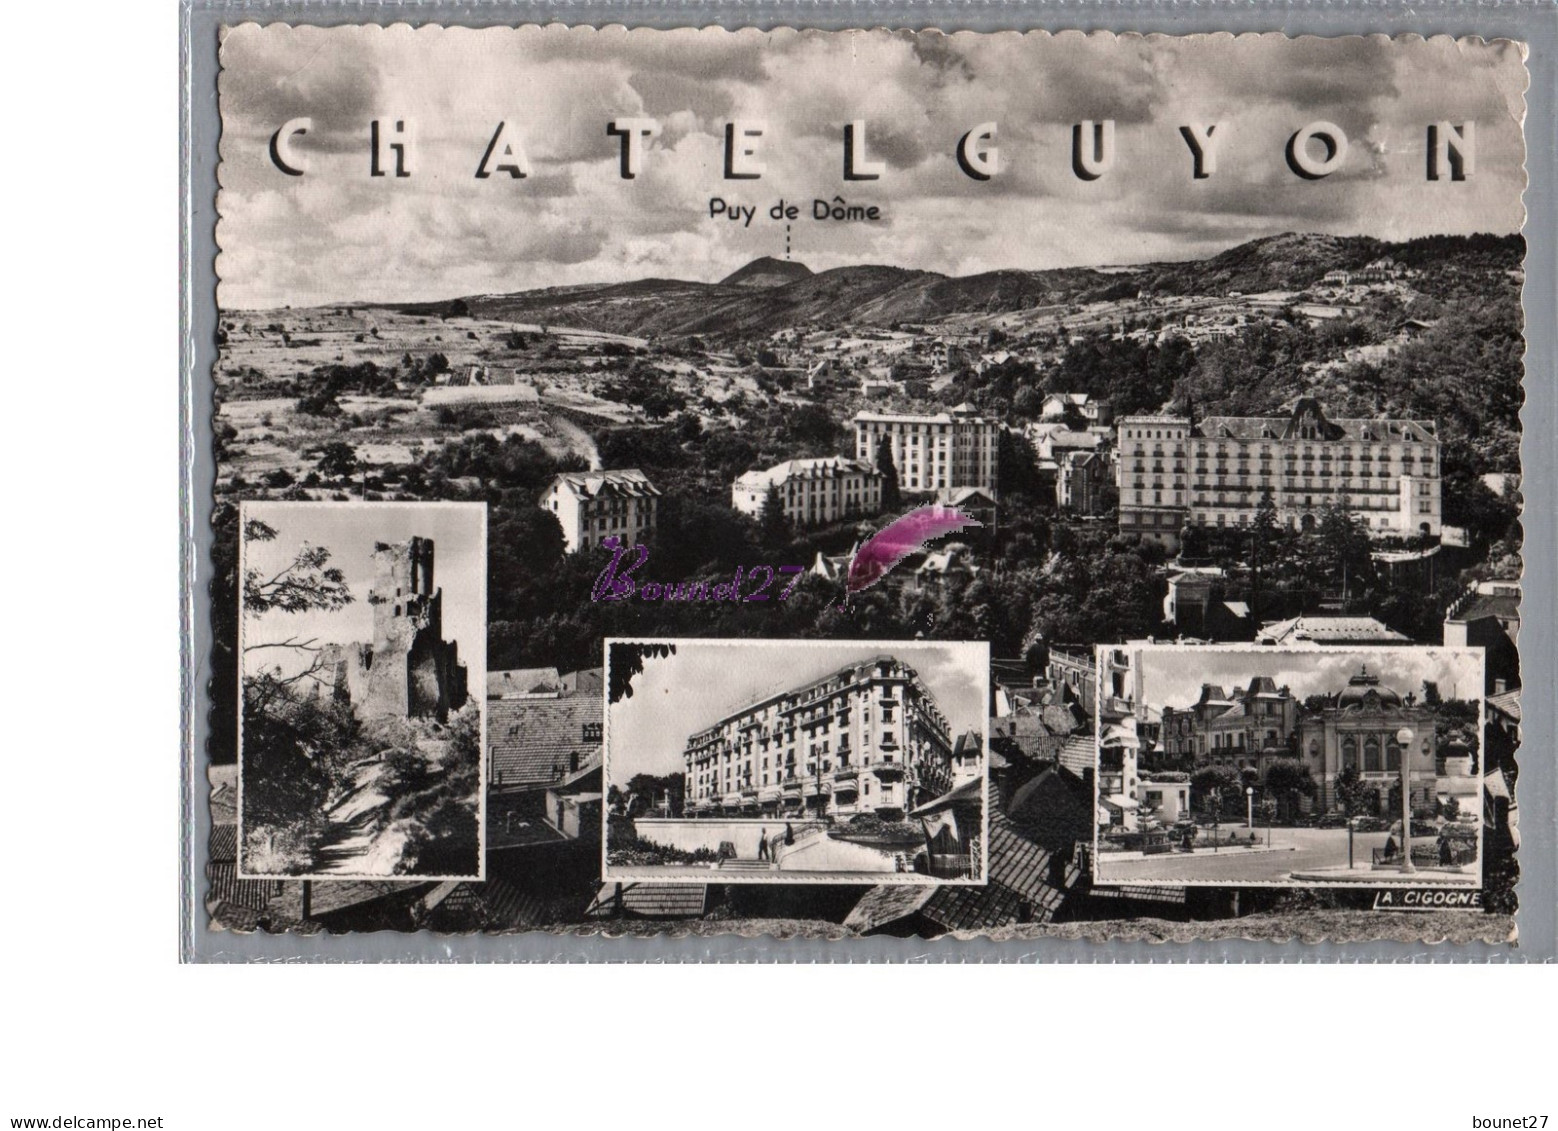 CHATELGUYON 63 CHATEL GUYON Vue Generale Chateau Tournoel Grand Hotel Et Source Yvonne Theatre - Châtel-Guyon